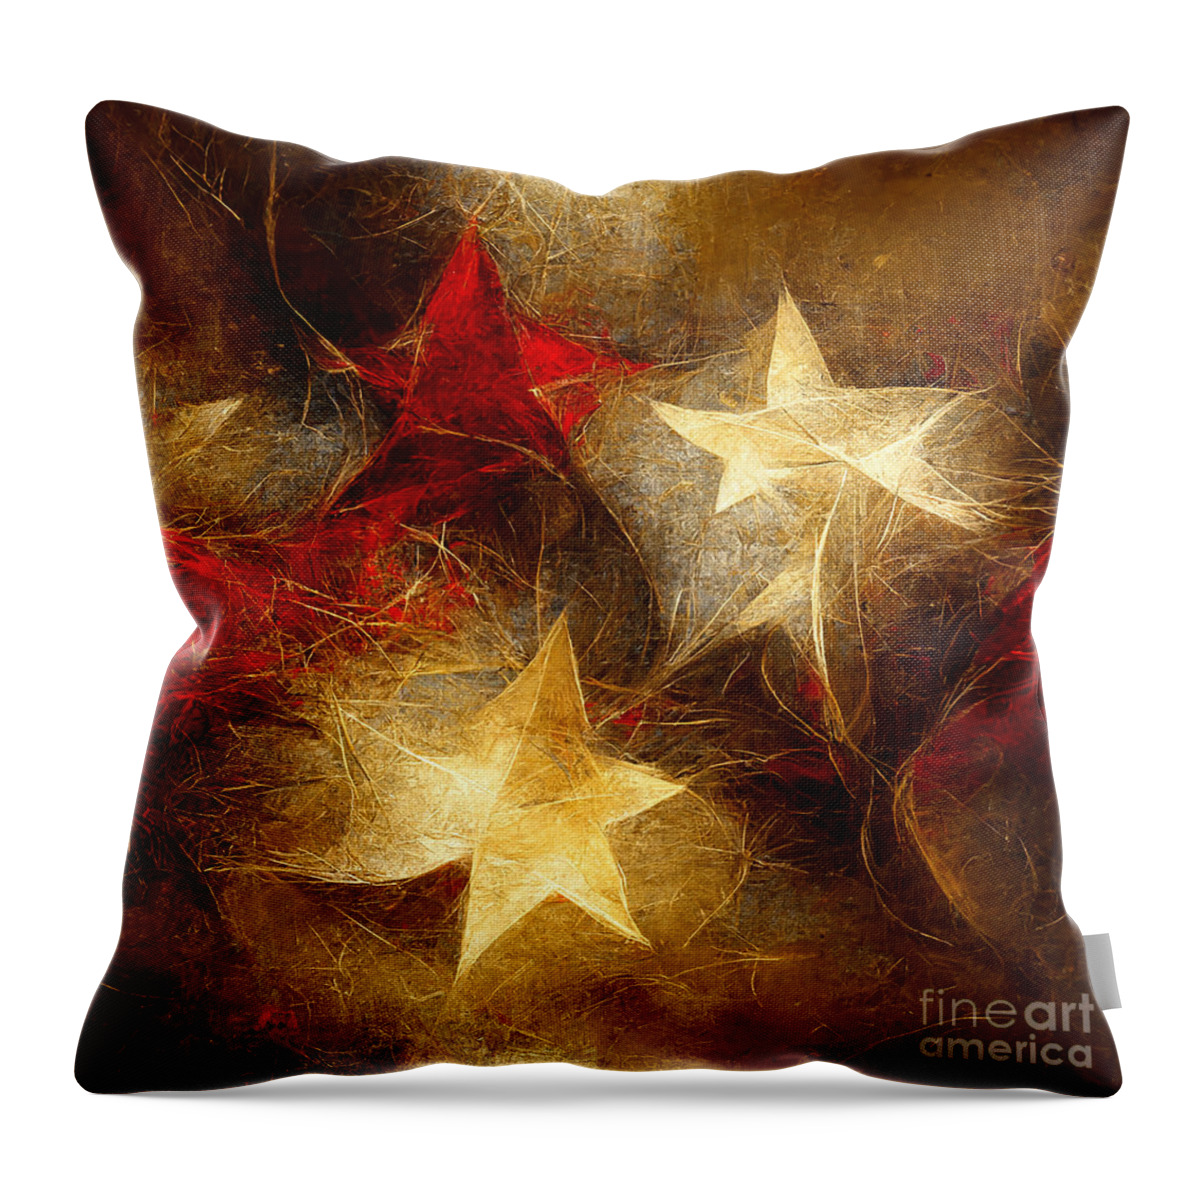 Series Throw Pillow featuring the digital art Seamless pattern Golden stars #1 by Sabantha